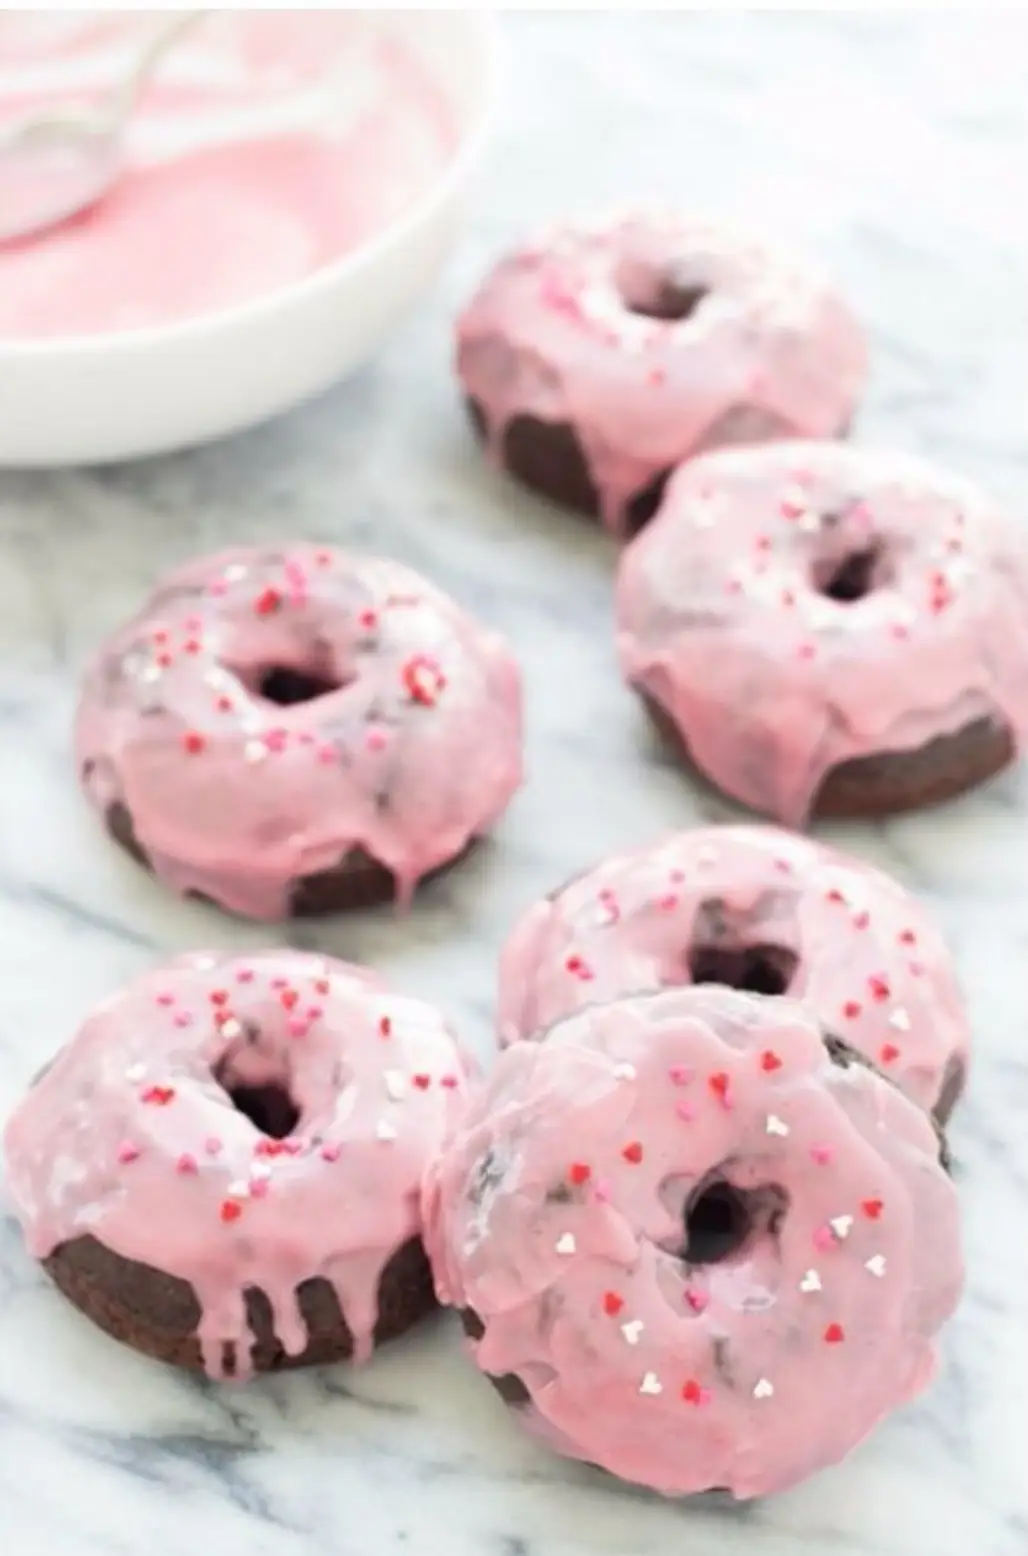 Chocolate Raspberry Donuts with Raspberry Glaze